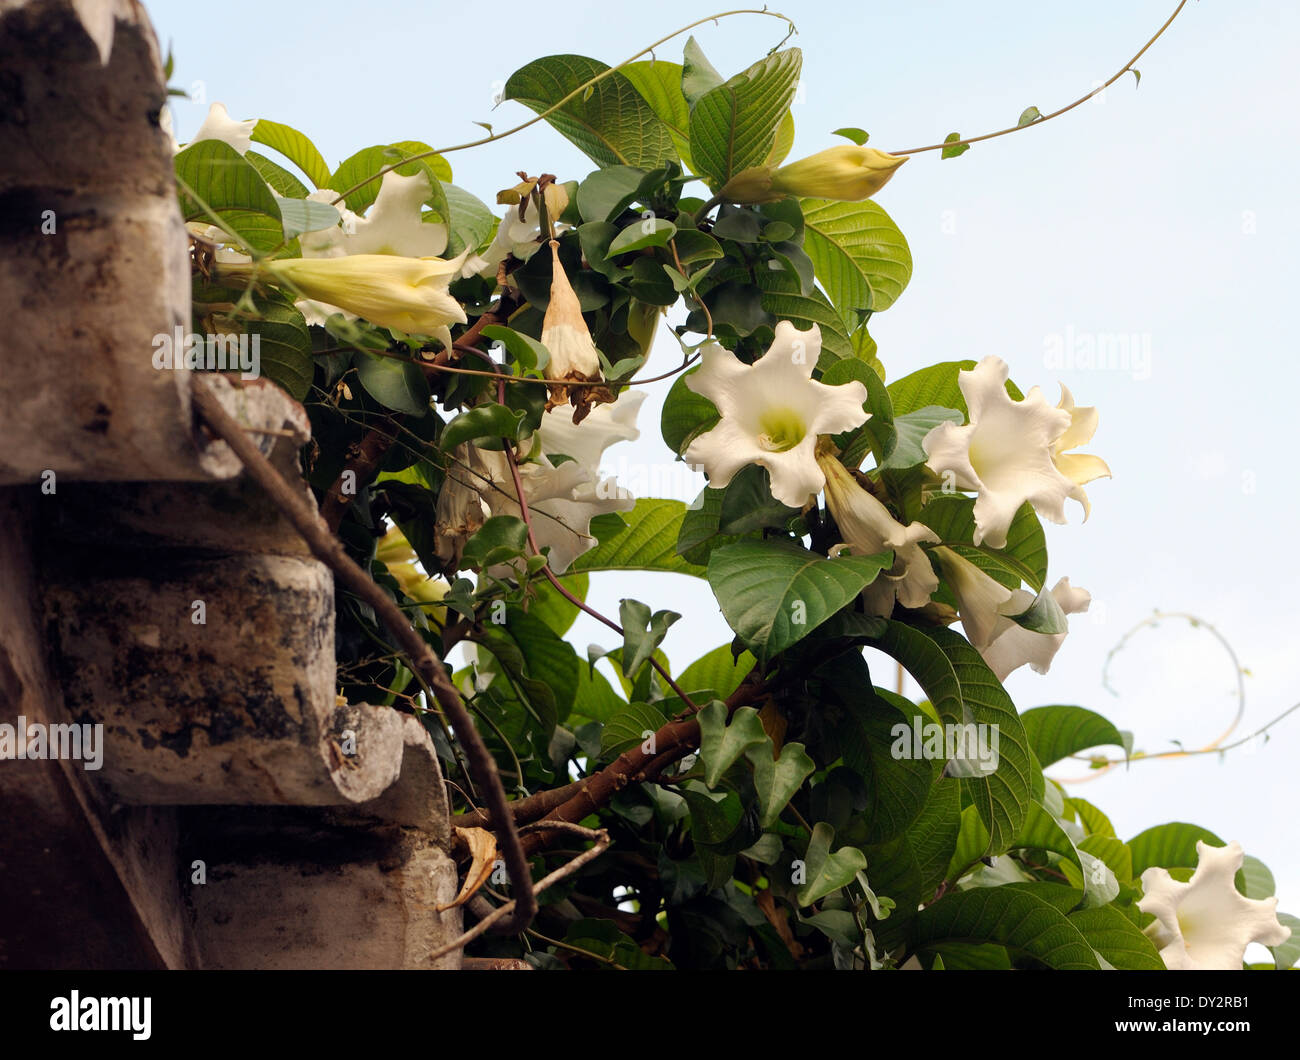 Pianta rampicante con tromba bianco fiori. Antigua Guatemala, Repubblica del Guatemala. 15Mar14 Foto Stock